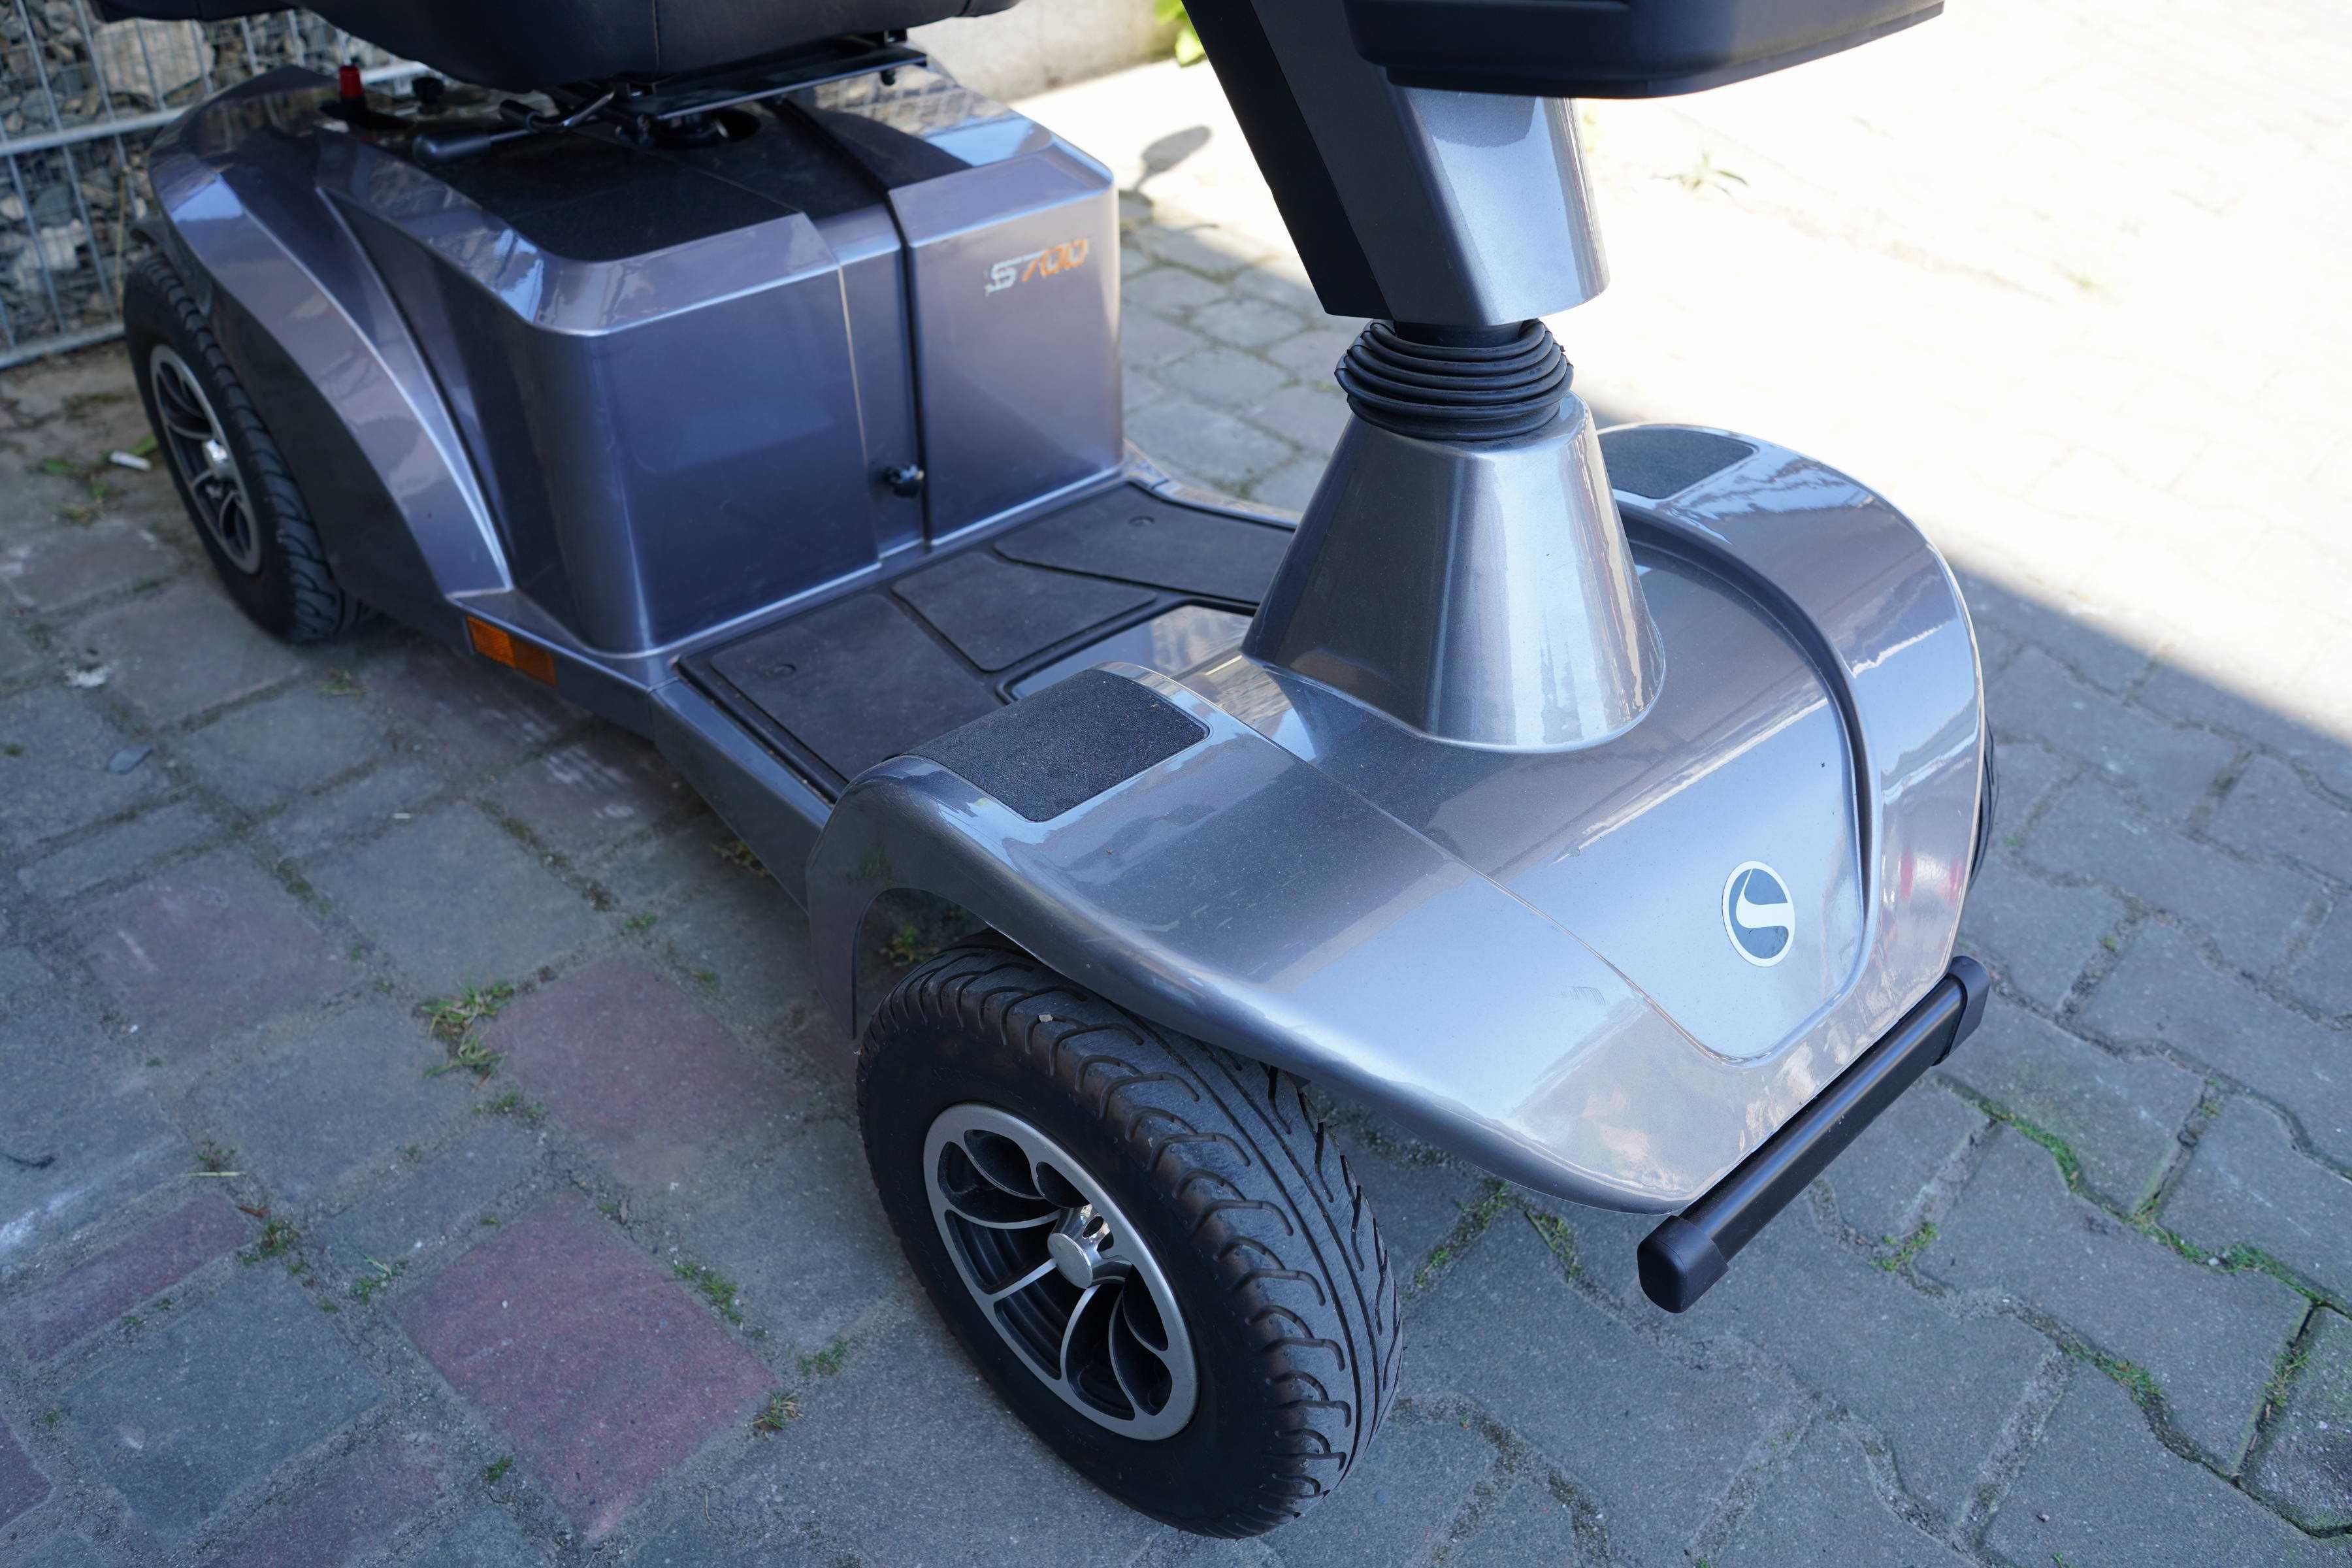 Skuter inwalidzki elektryczny sterling s700 wózek pojazd srebro